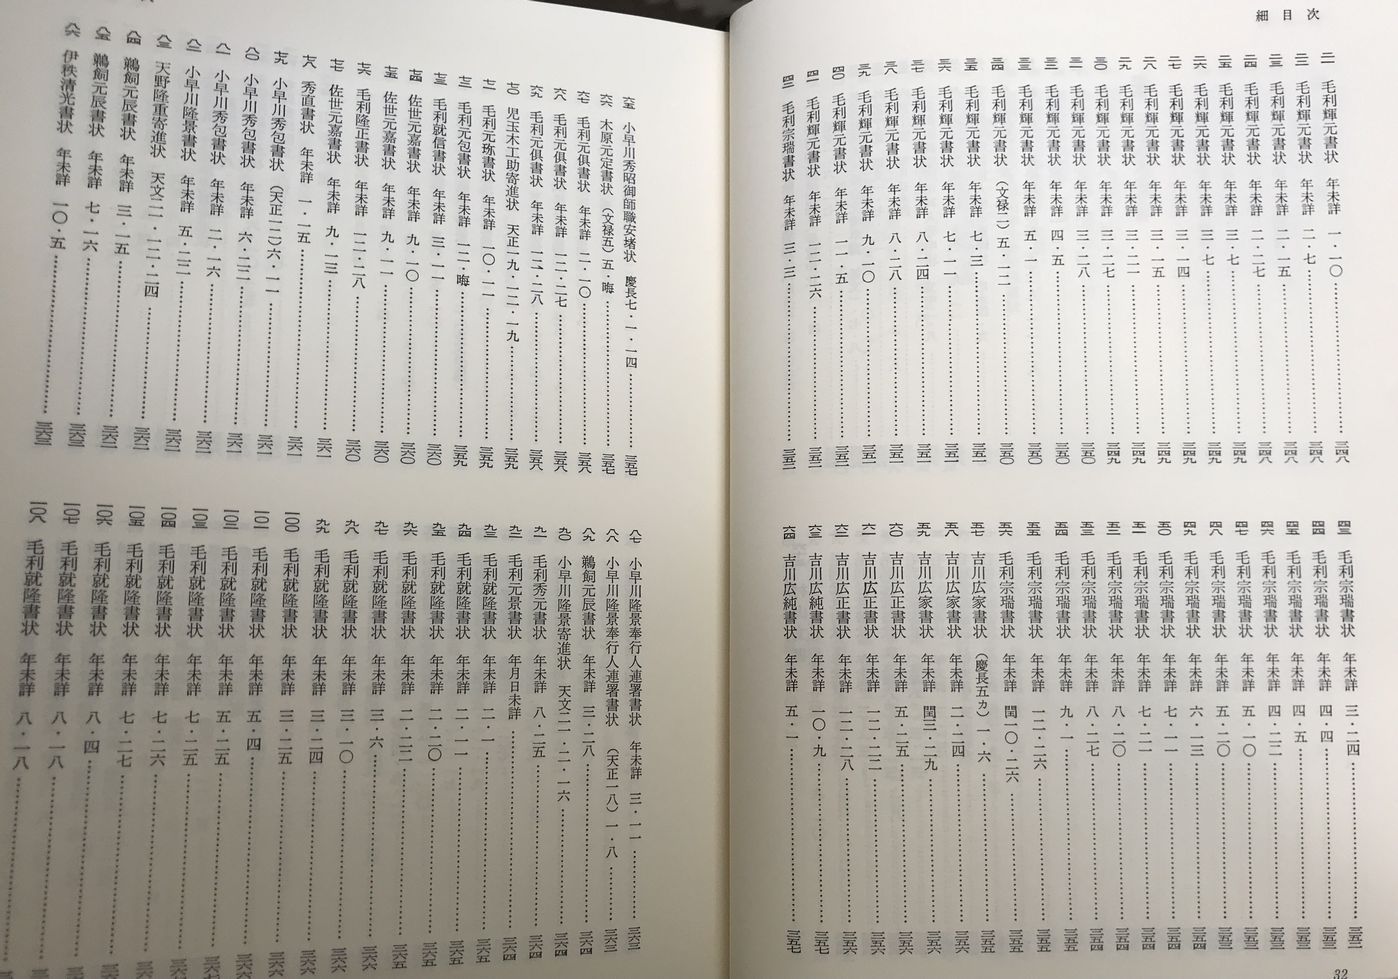 書状の翻刻は『三重県史 資料編 中世1（下）(1999)』に多数収録されている